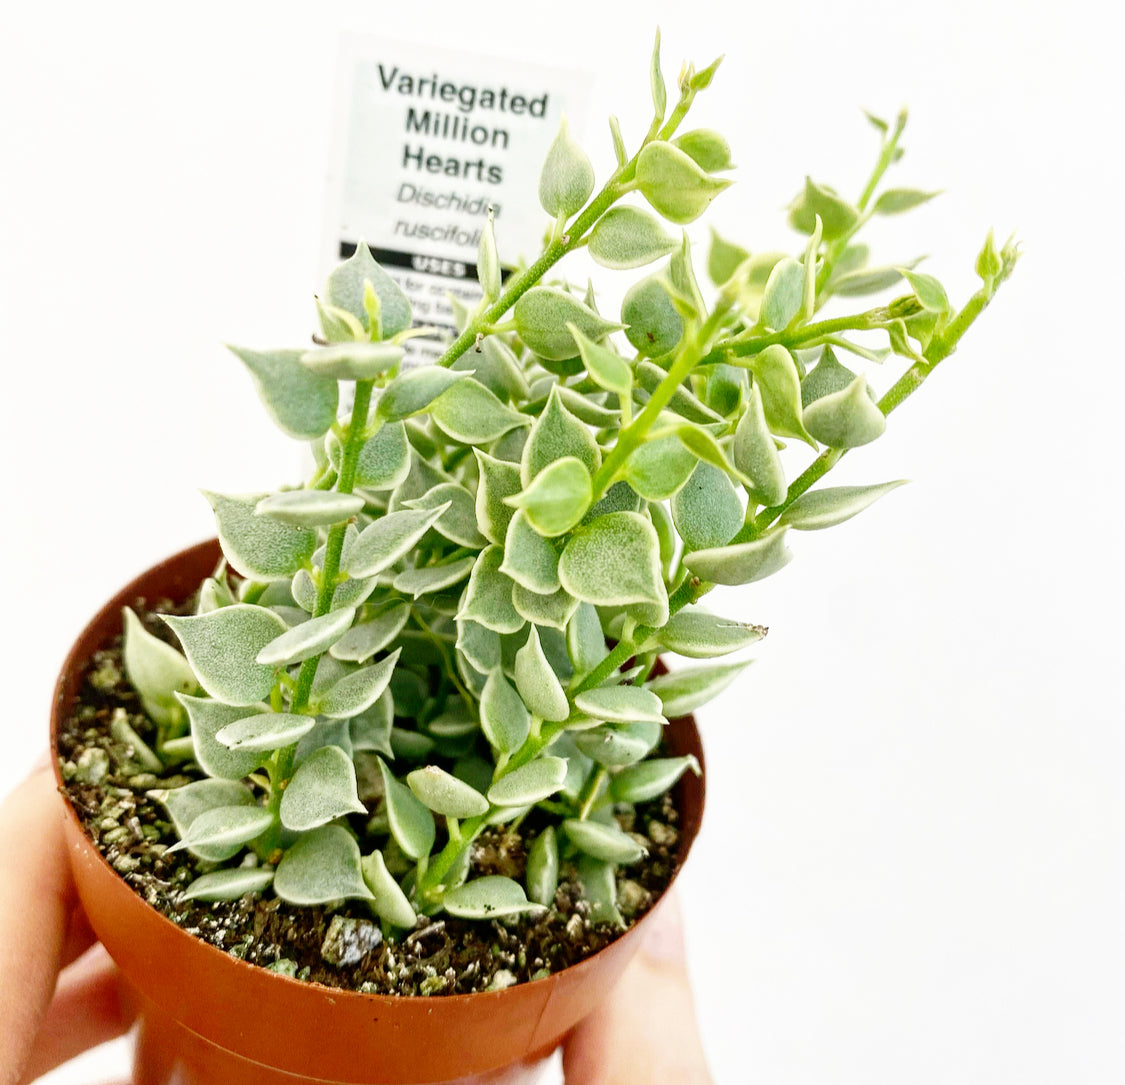 Dischidia ruscifolia variegata